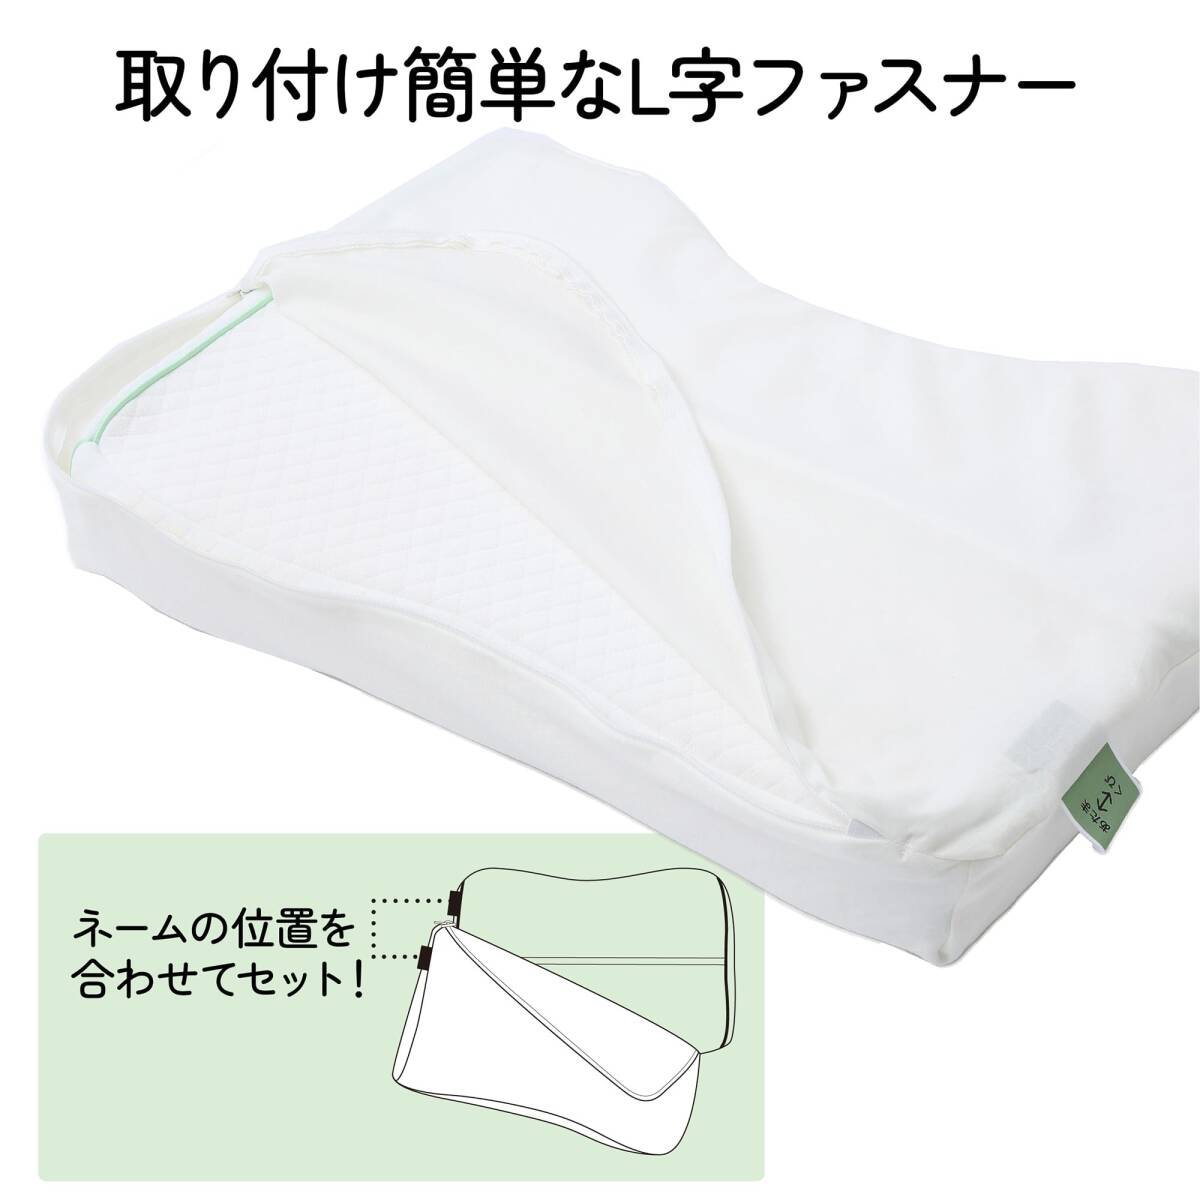 nishikawa【西川】 睡眠ラボ フラット 専用 枕カバー 洗える ぴったりフィット 柔らかな肌触り Flat 日本製 アイボリー 53X3_画像3